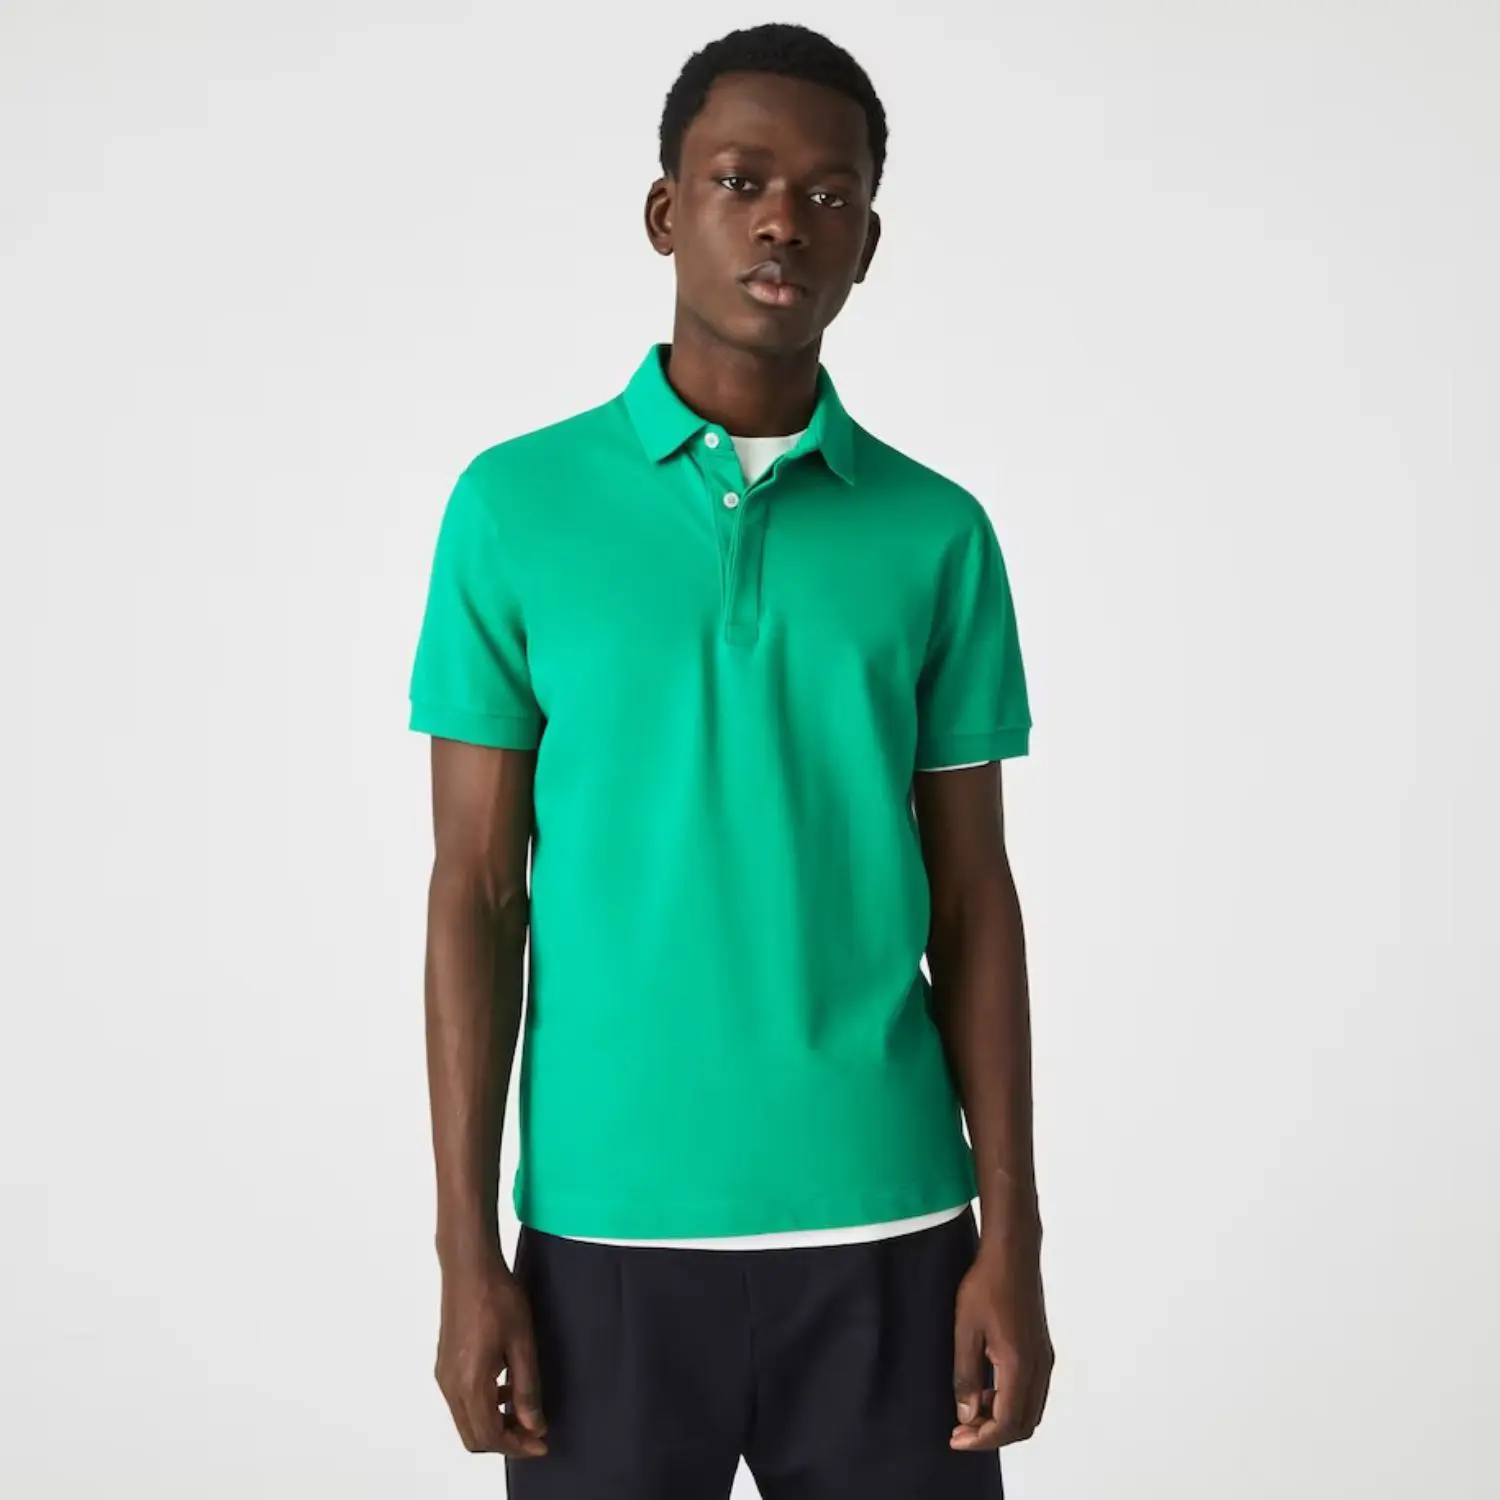 Jersey Stoff fühlt sich weich und glatt entspannt Standard fit geripptes Halsband 100% Polyester grün Spiel Royal Mens Fitness T-Shirt